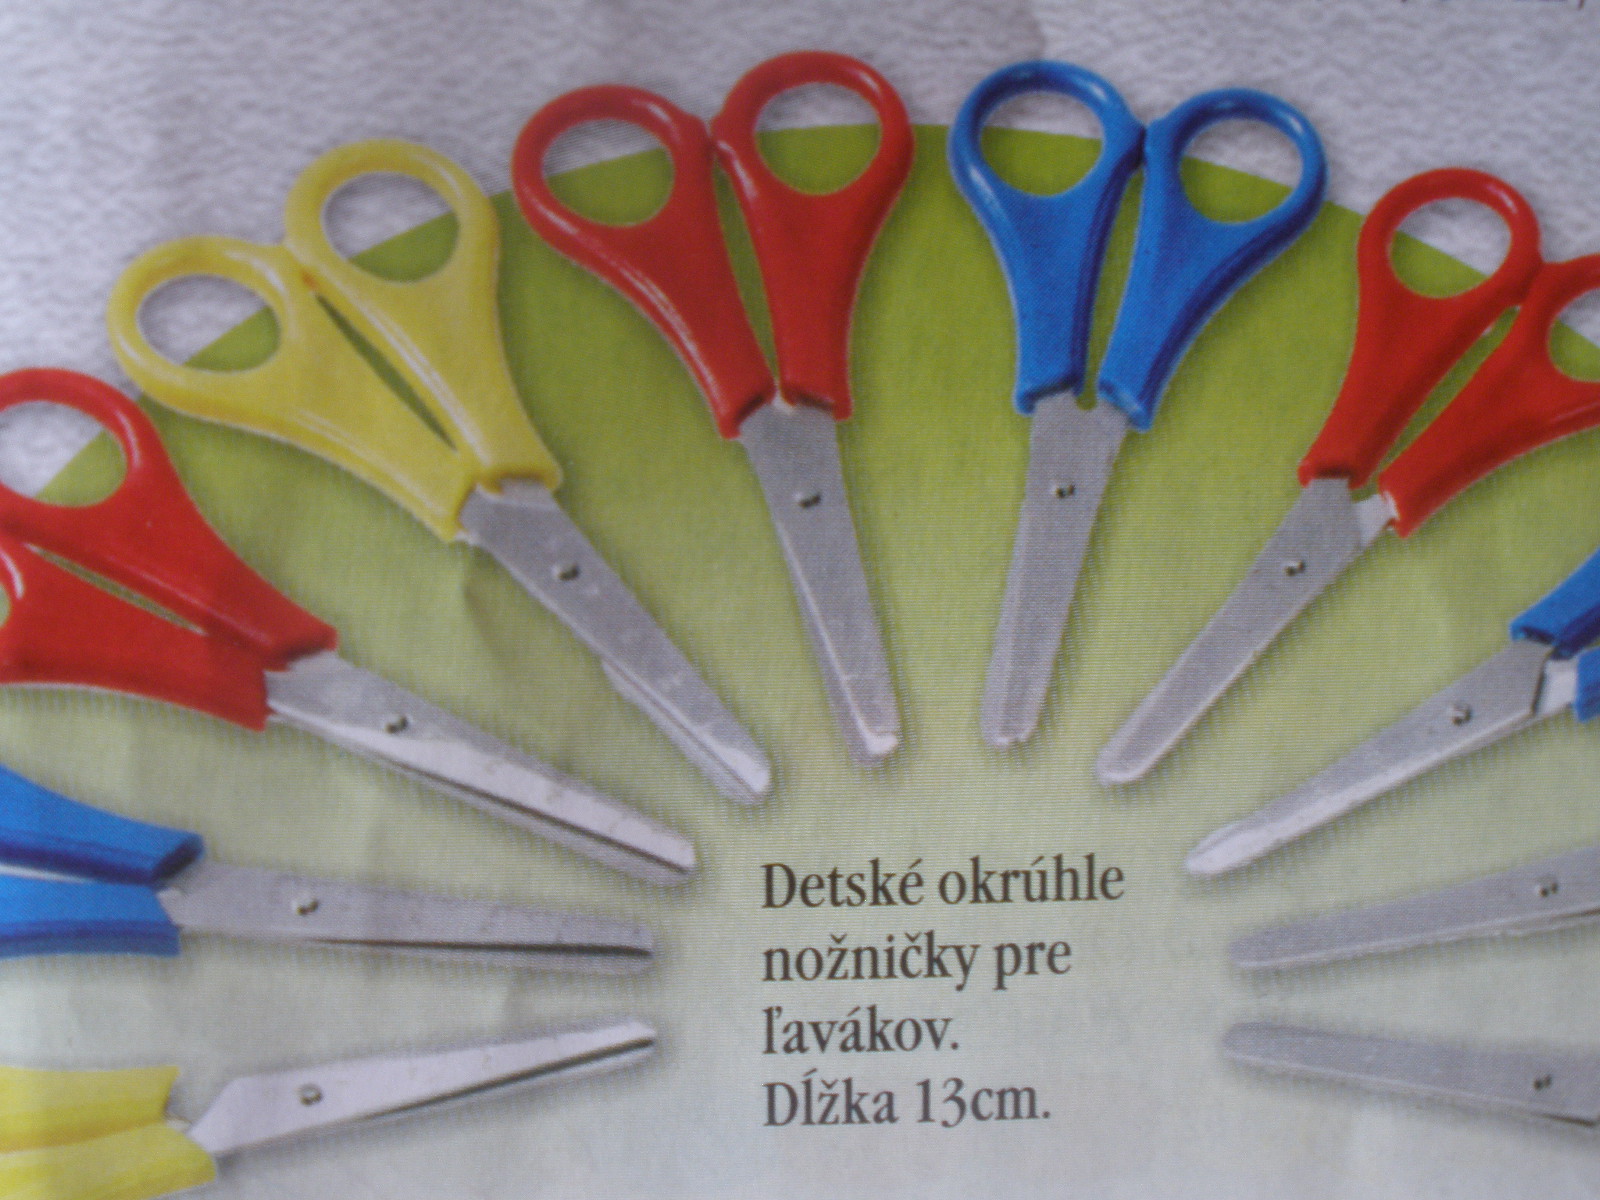 Detské nožnice pre ľavákov = veľmi kvalitné (min. odber 10 ks)